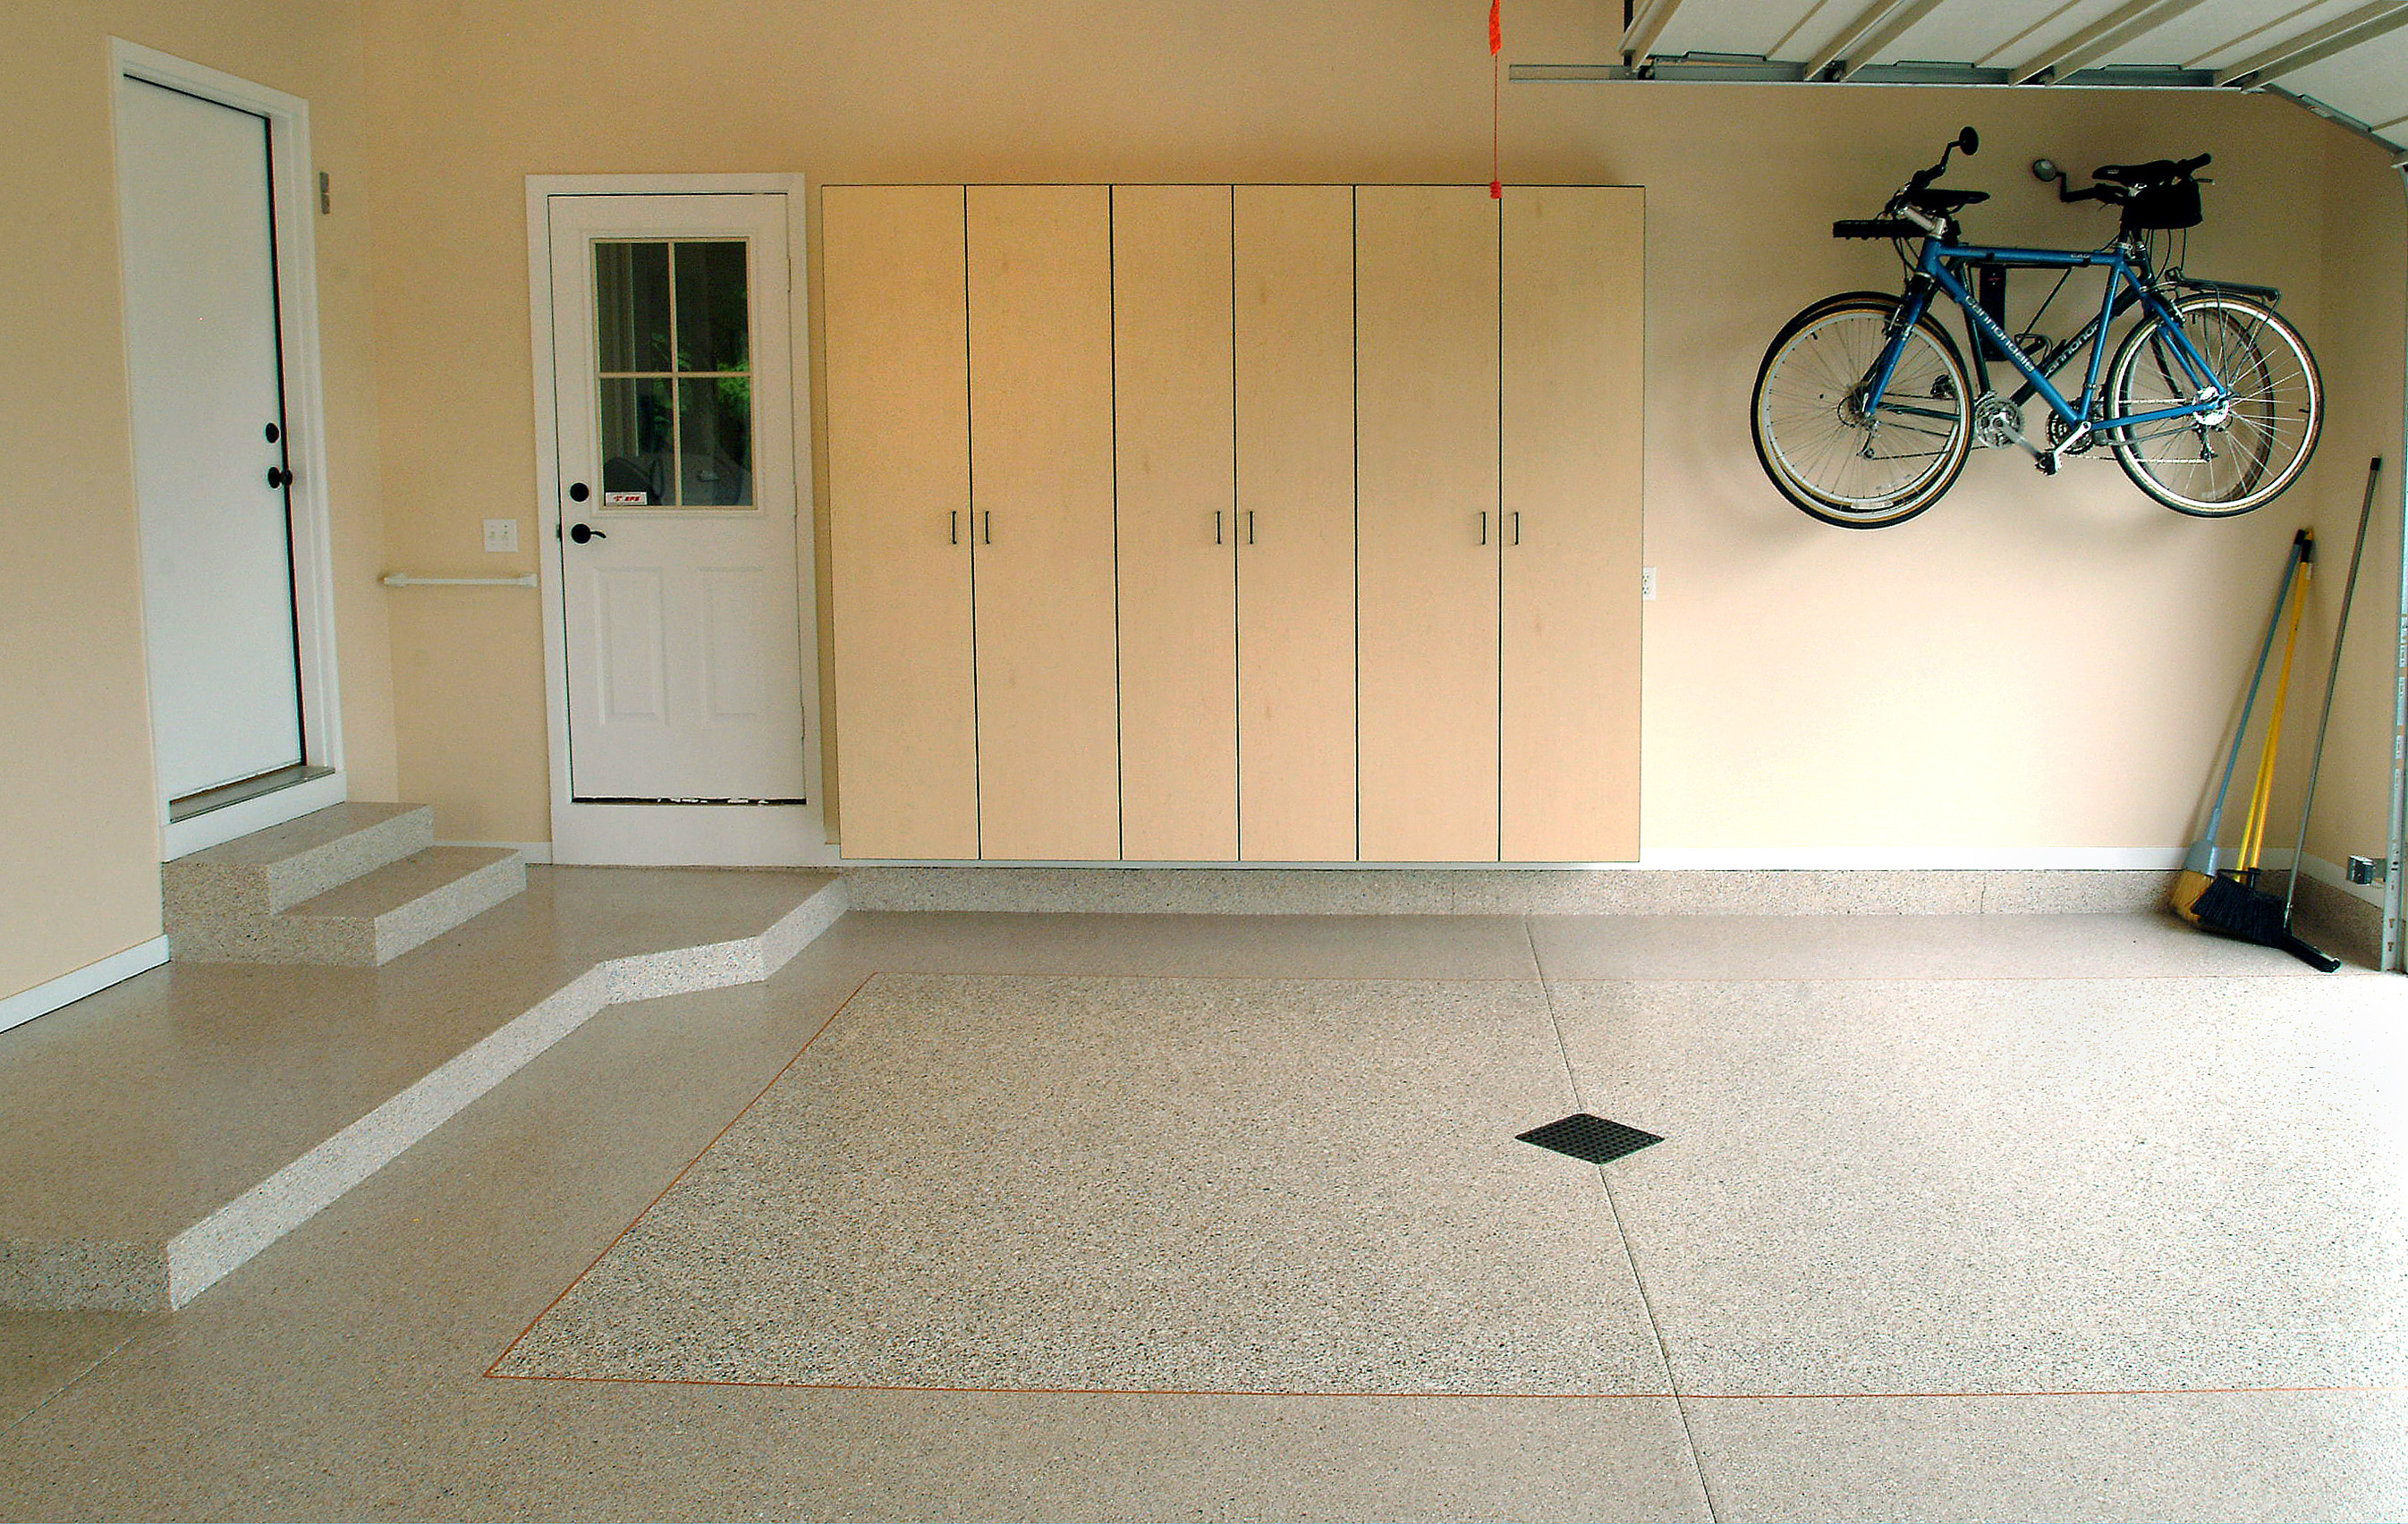 Best ideas about Epoxy Garage Floor DIY
. Save or Pin DIY Epoxy Garage Floor coating Now.